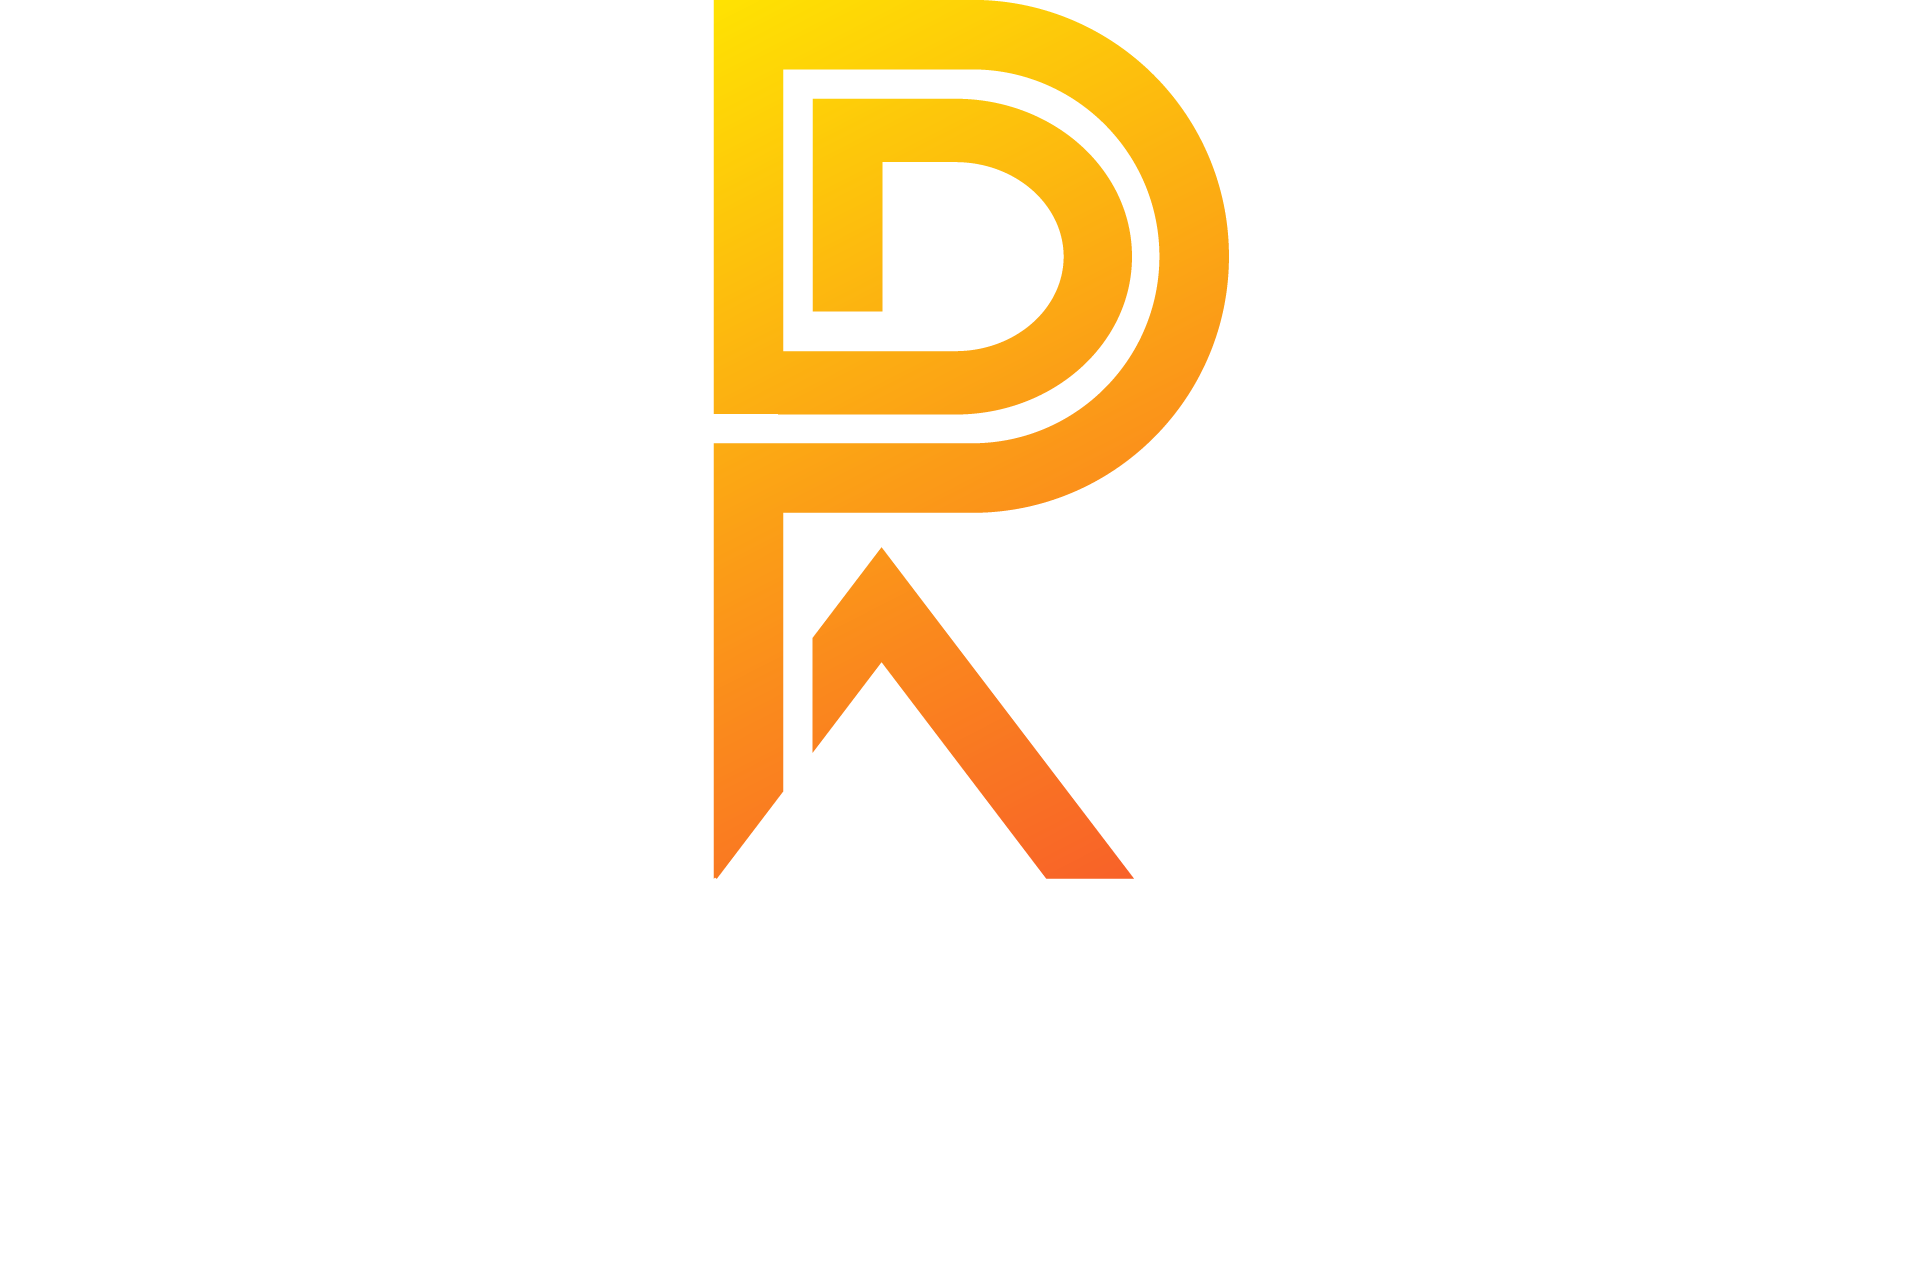 Peter van der Vaart